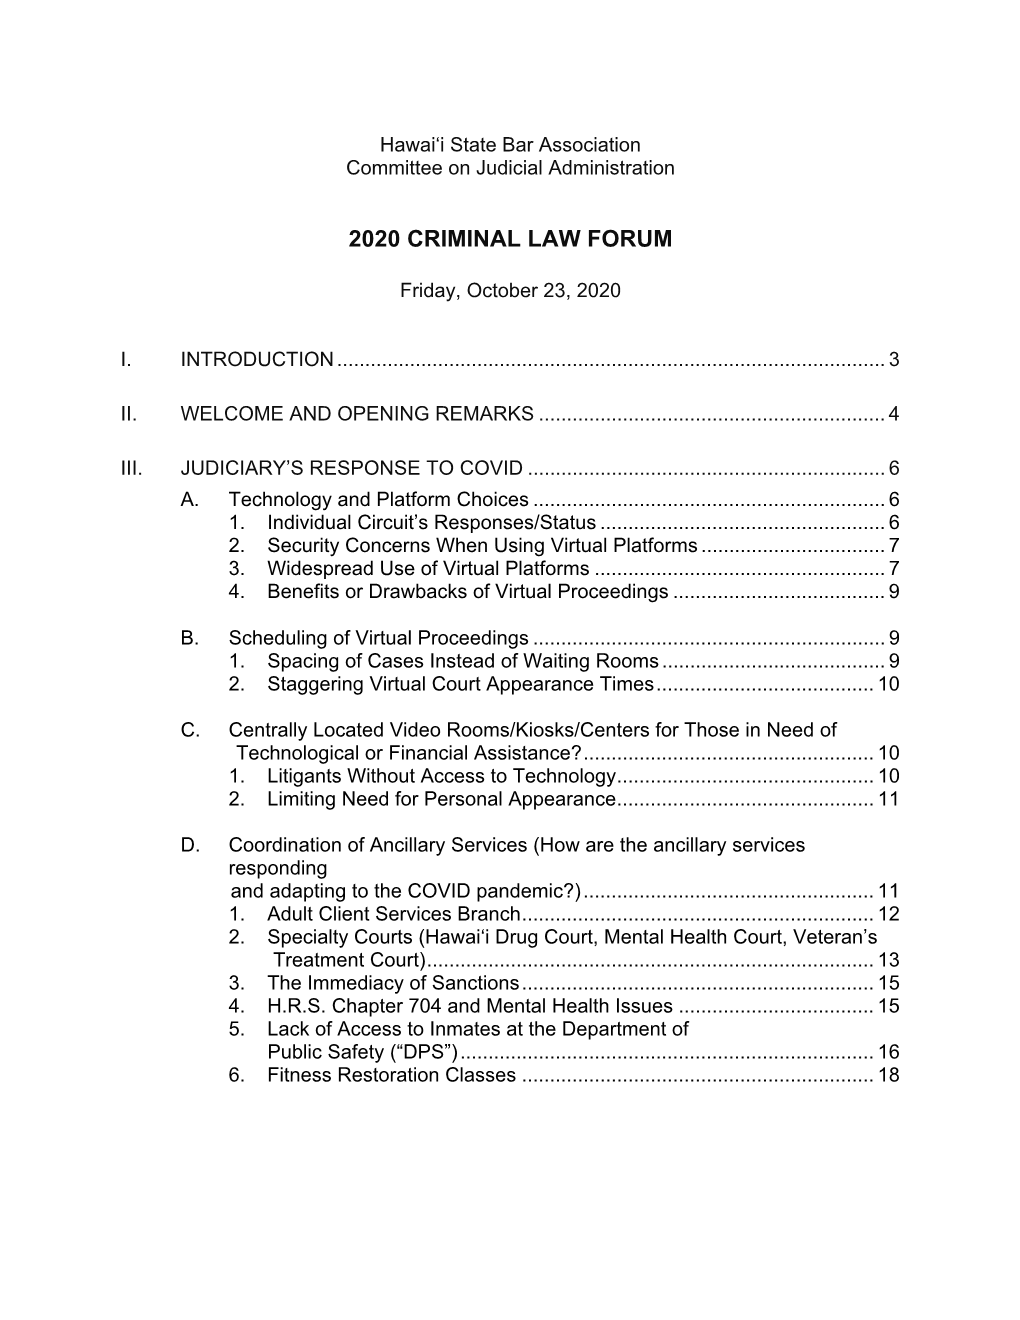 2020 Criminal Law Forum